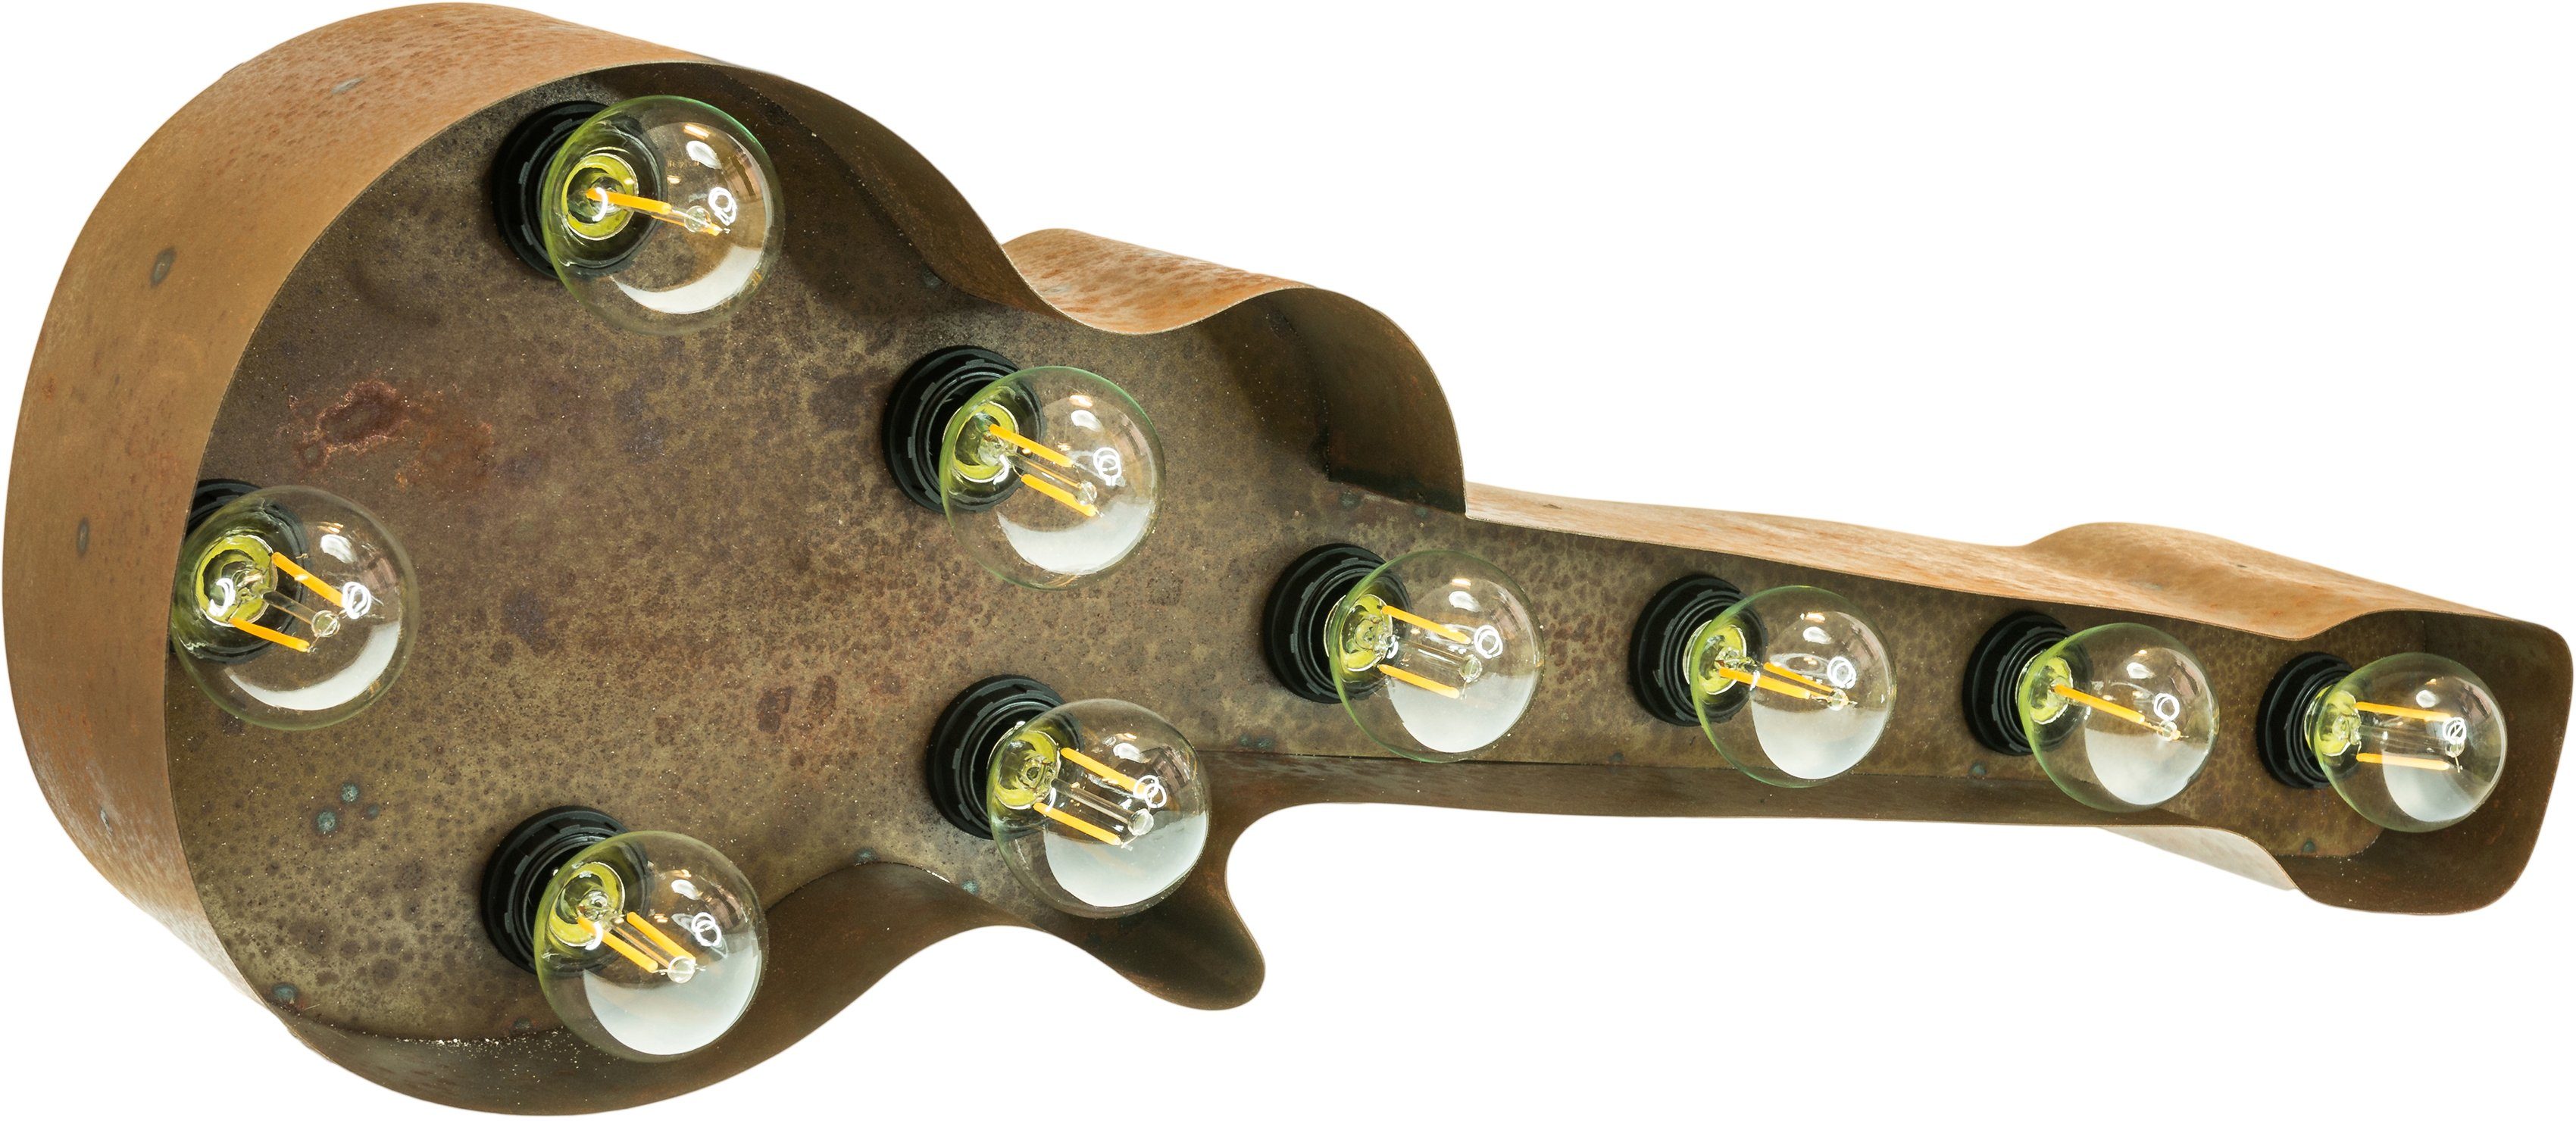 MARQUEE LIGHTS Tischlampe Wandlampe, Leuchtmittel, Dekolicht Old (exkl) 61x38cm ohne Old Warmweiß, braun E14 LED - Lichtquellen Guitar, 9 Guitar